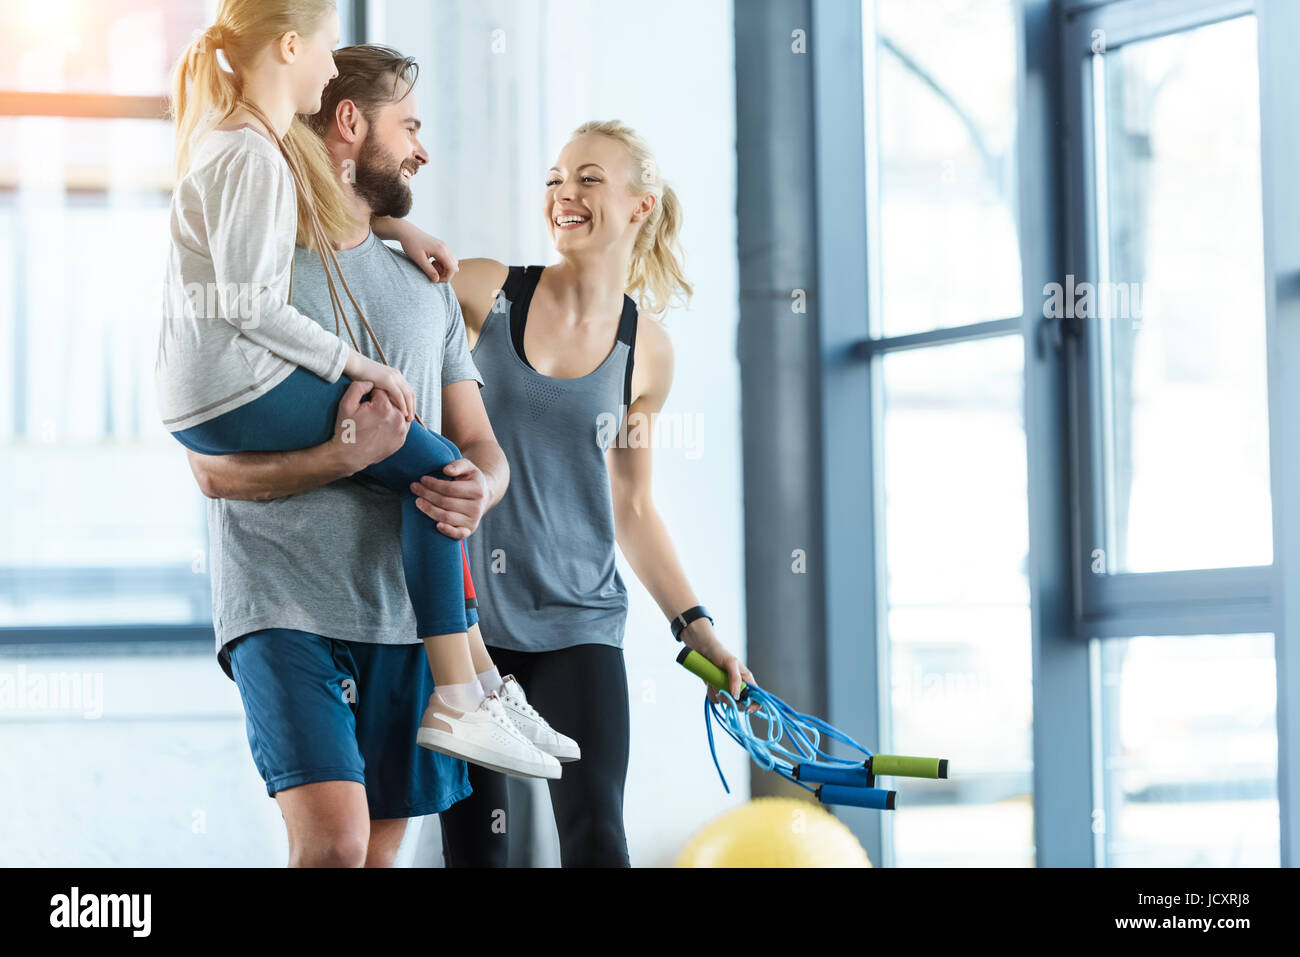 Ritratto di famiglia felice in piedi insieme al centro fitness Foto Stock